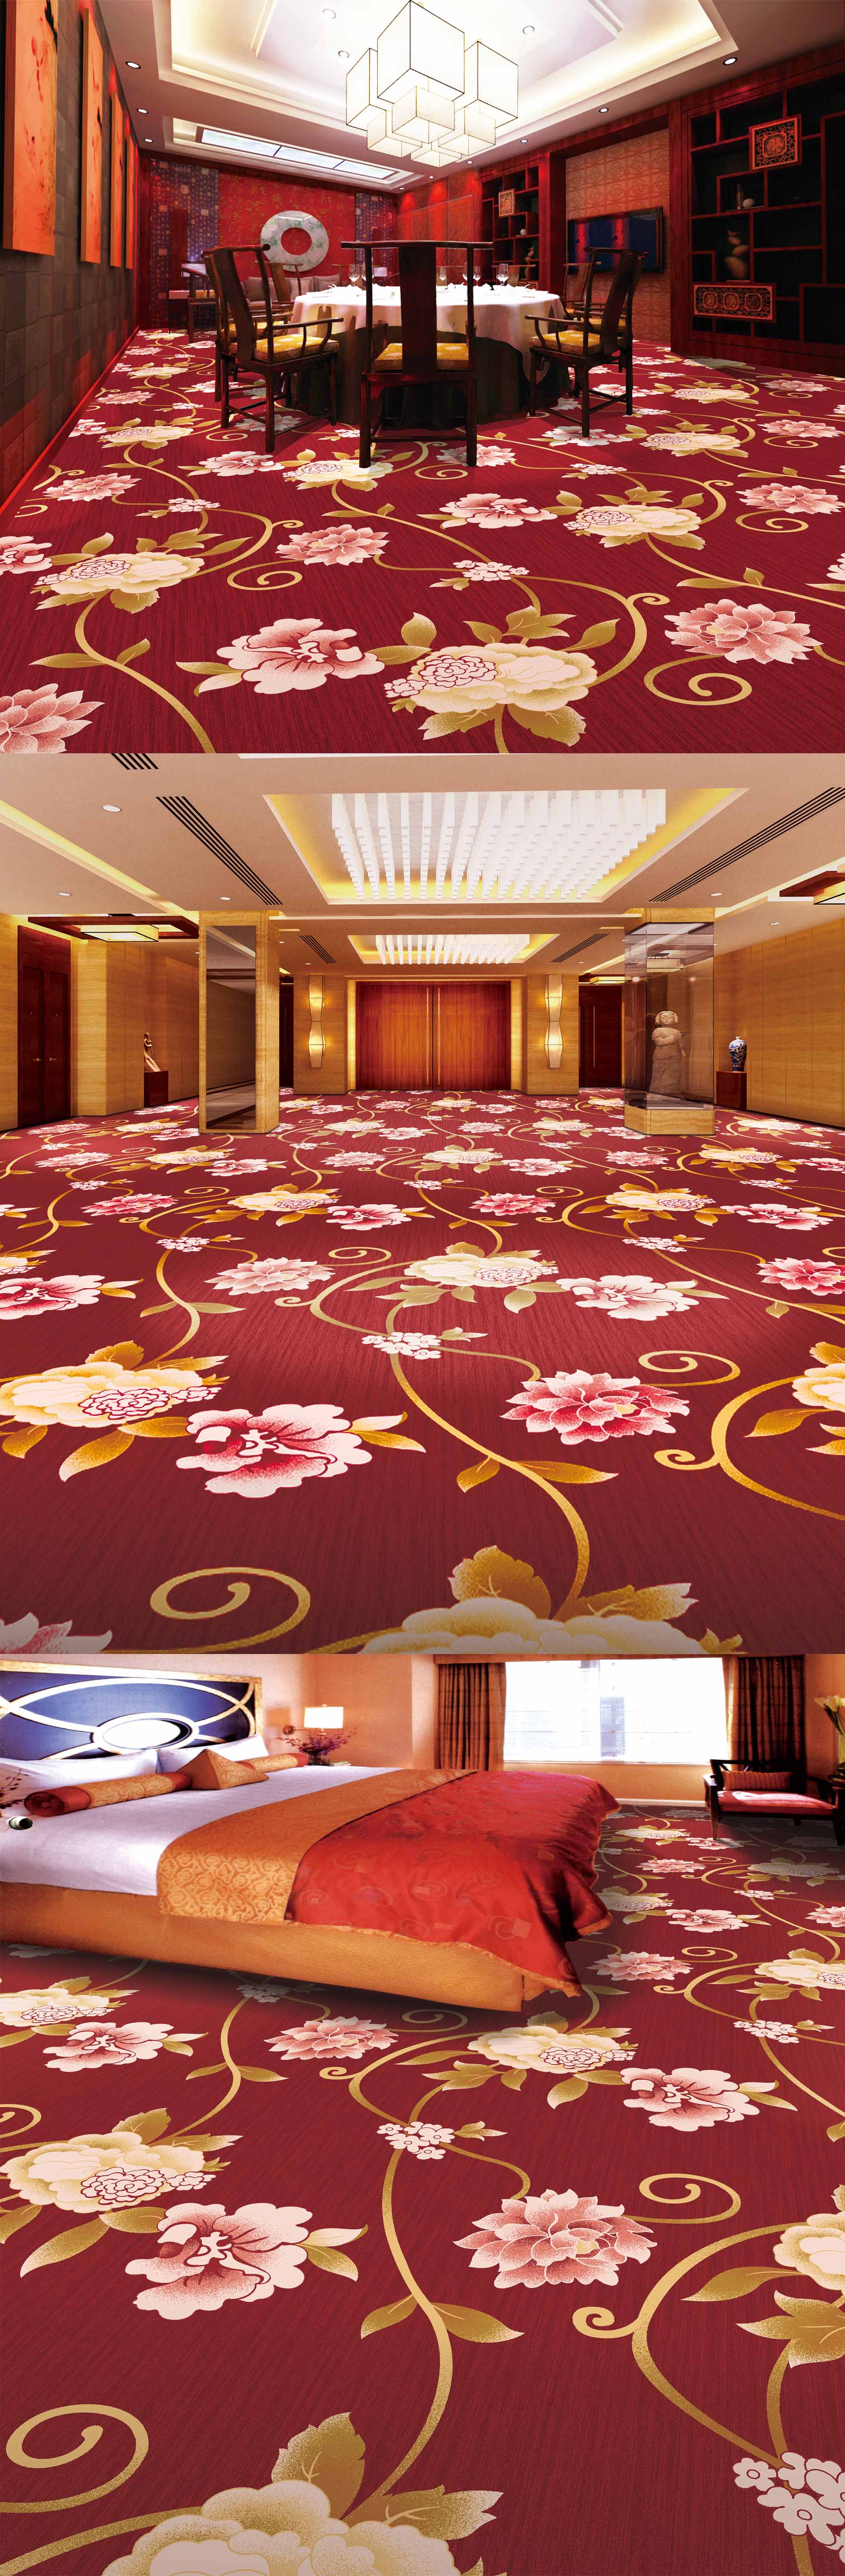 酒店走廊是一定要铺设地毯的